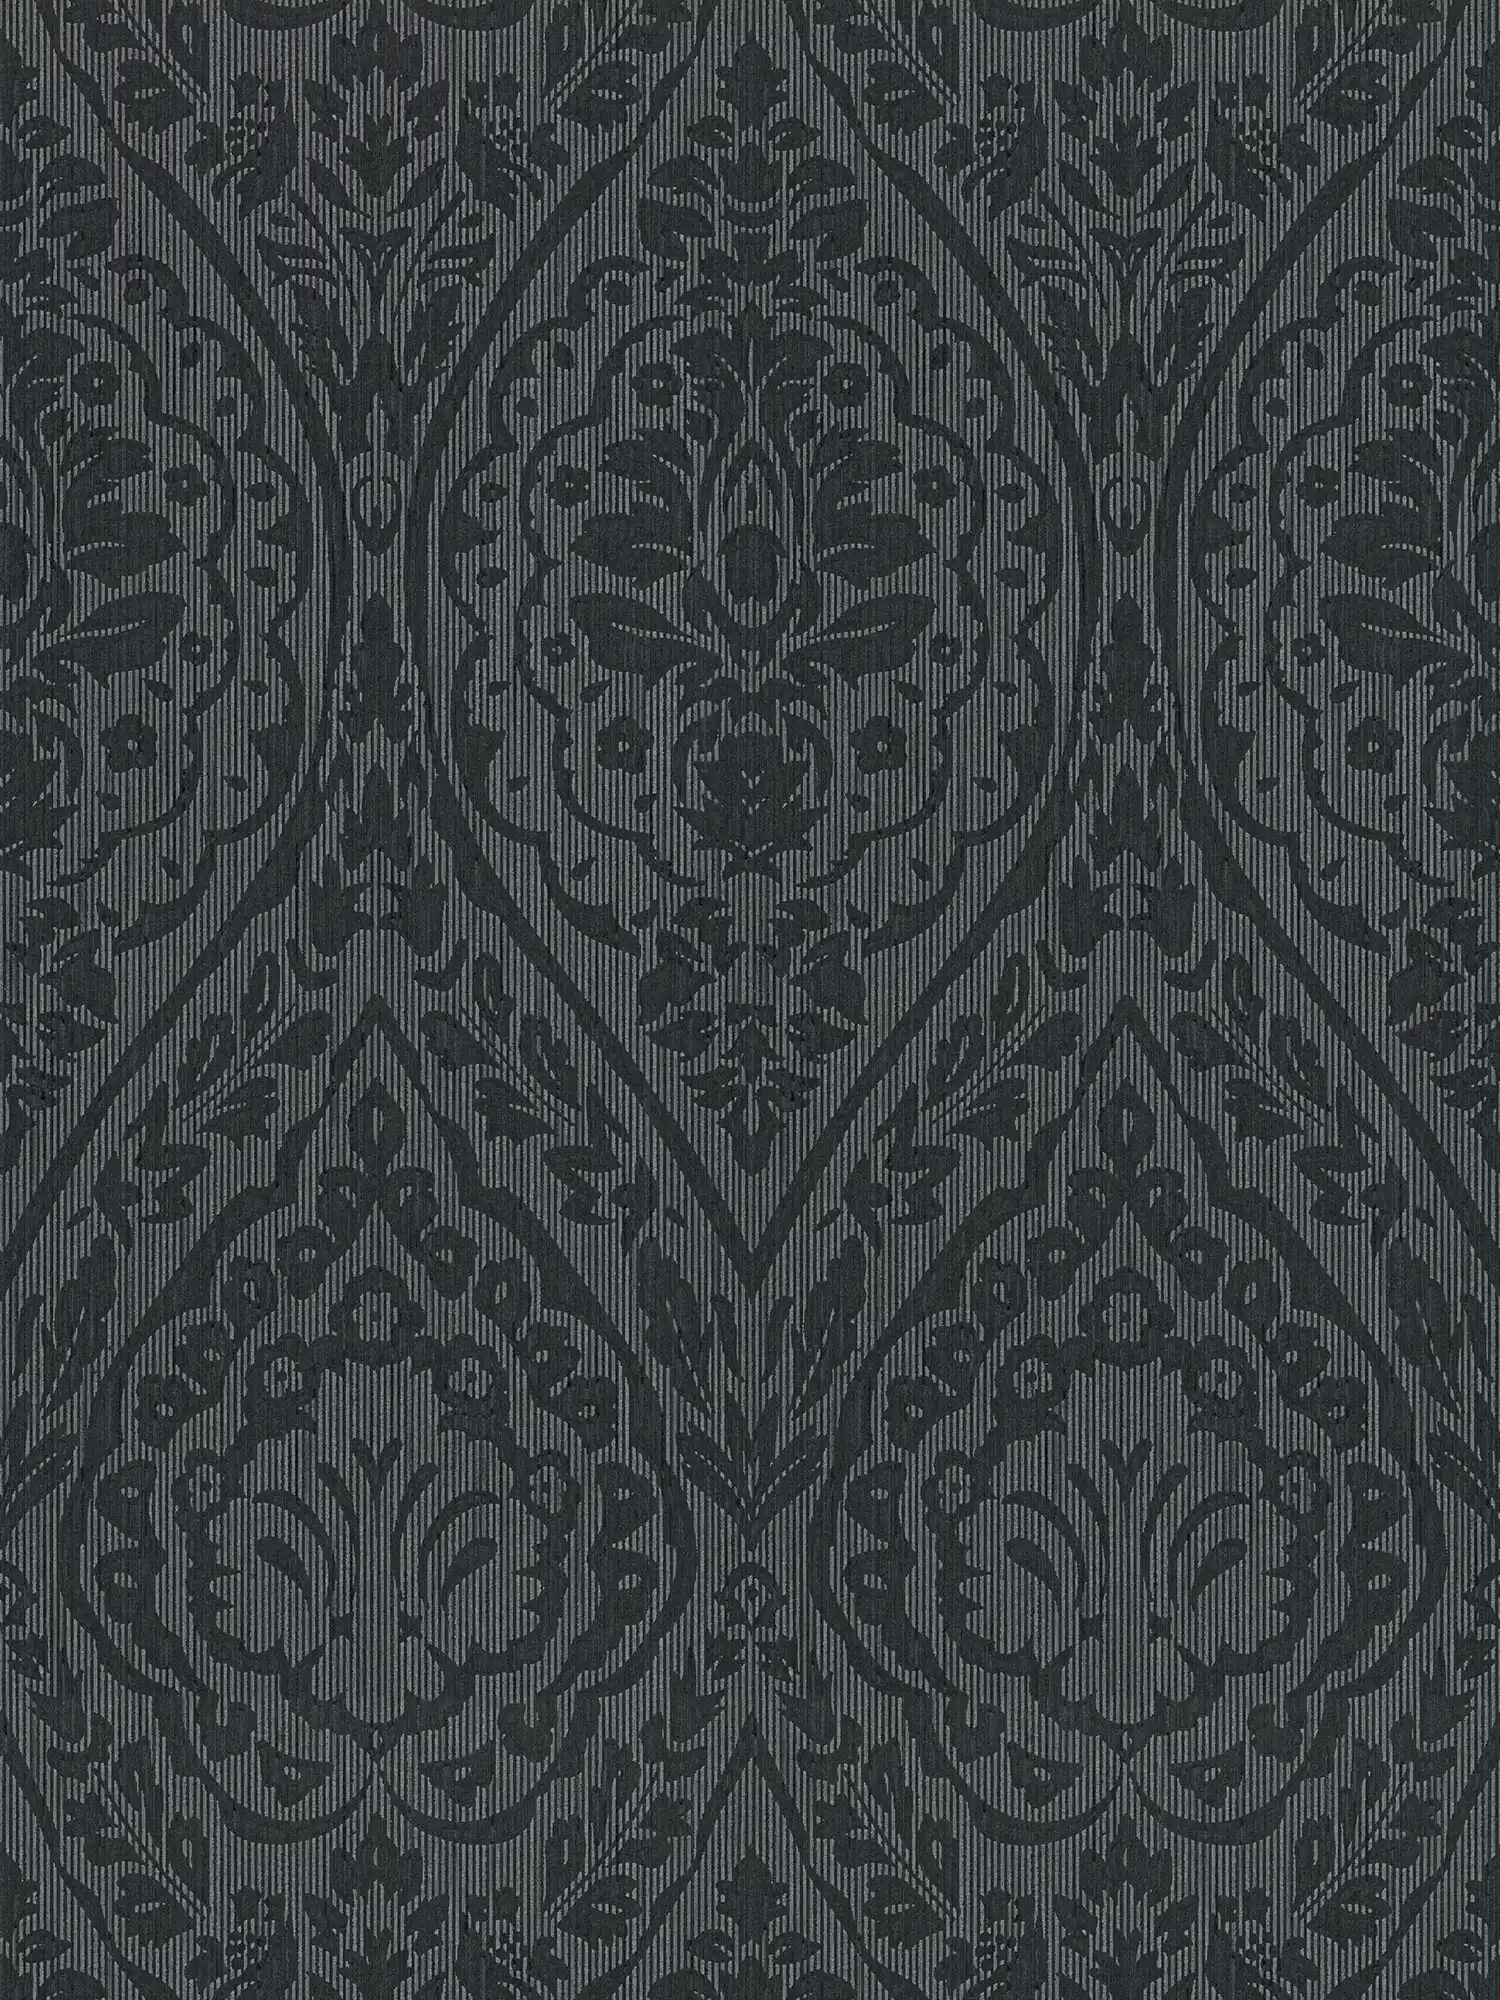 Bloemenornament behang in koloniale stijl - grijs, zwart
